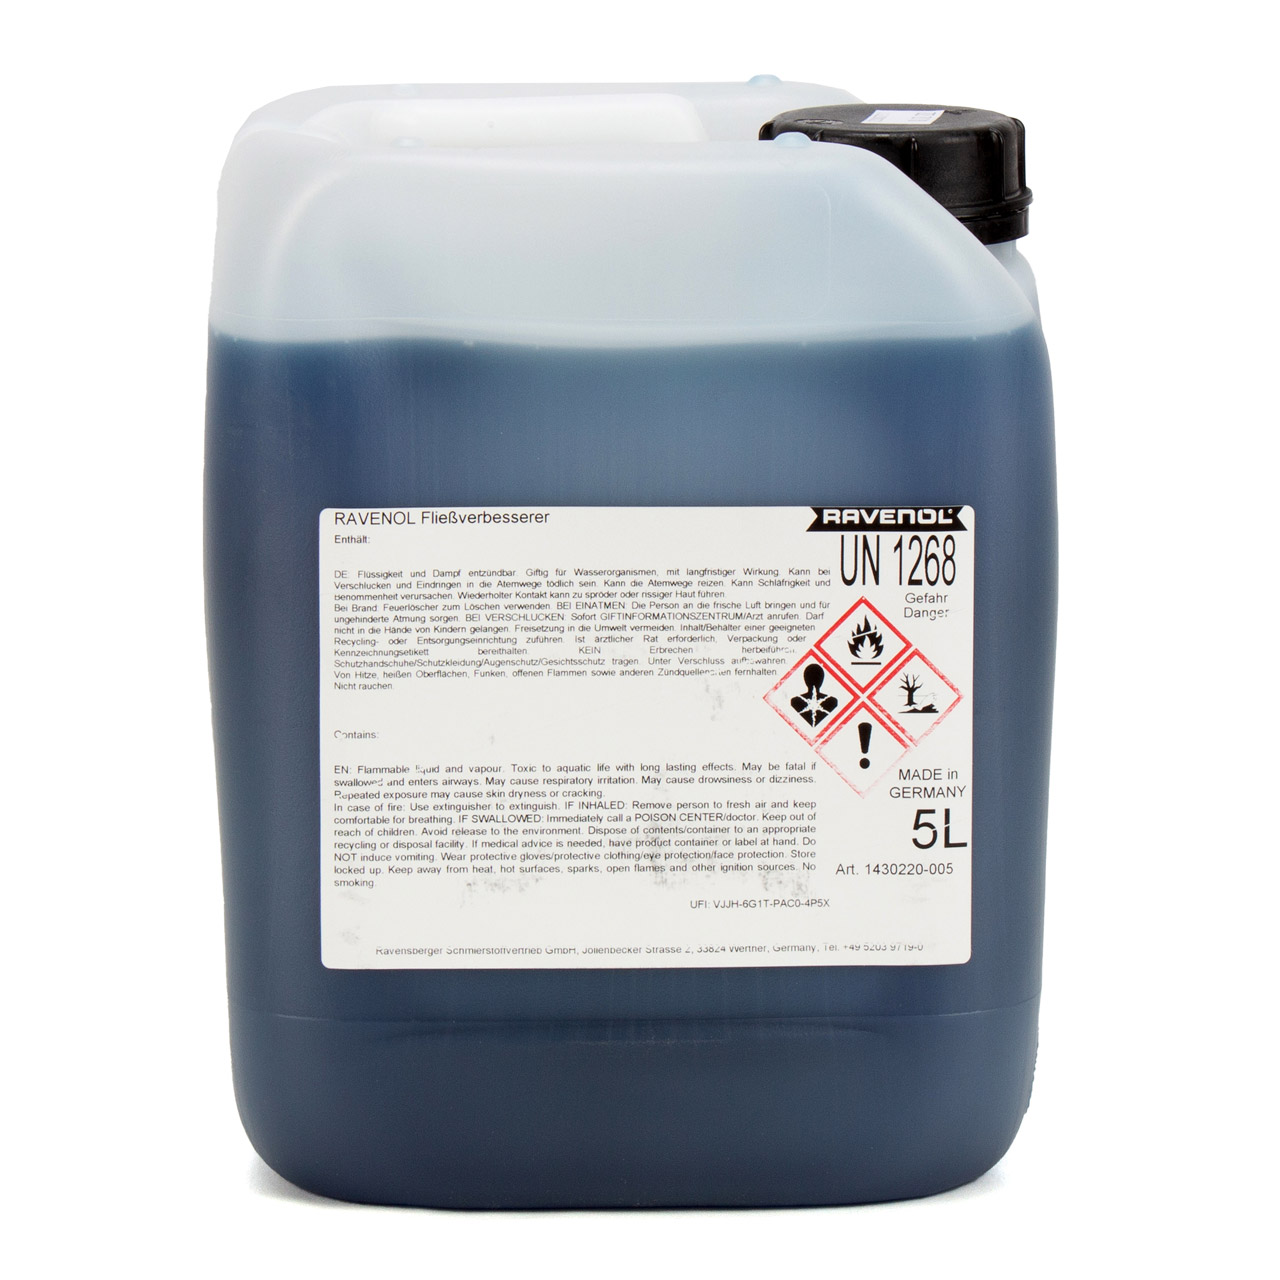 5L 5 Liter RAVENOL 1430220-005 Fließverbesserer 1:1000 Diesel Heizöl Frostschutz Frost Öl